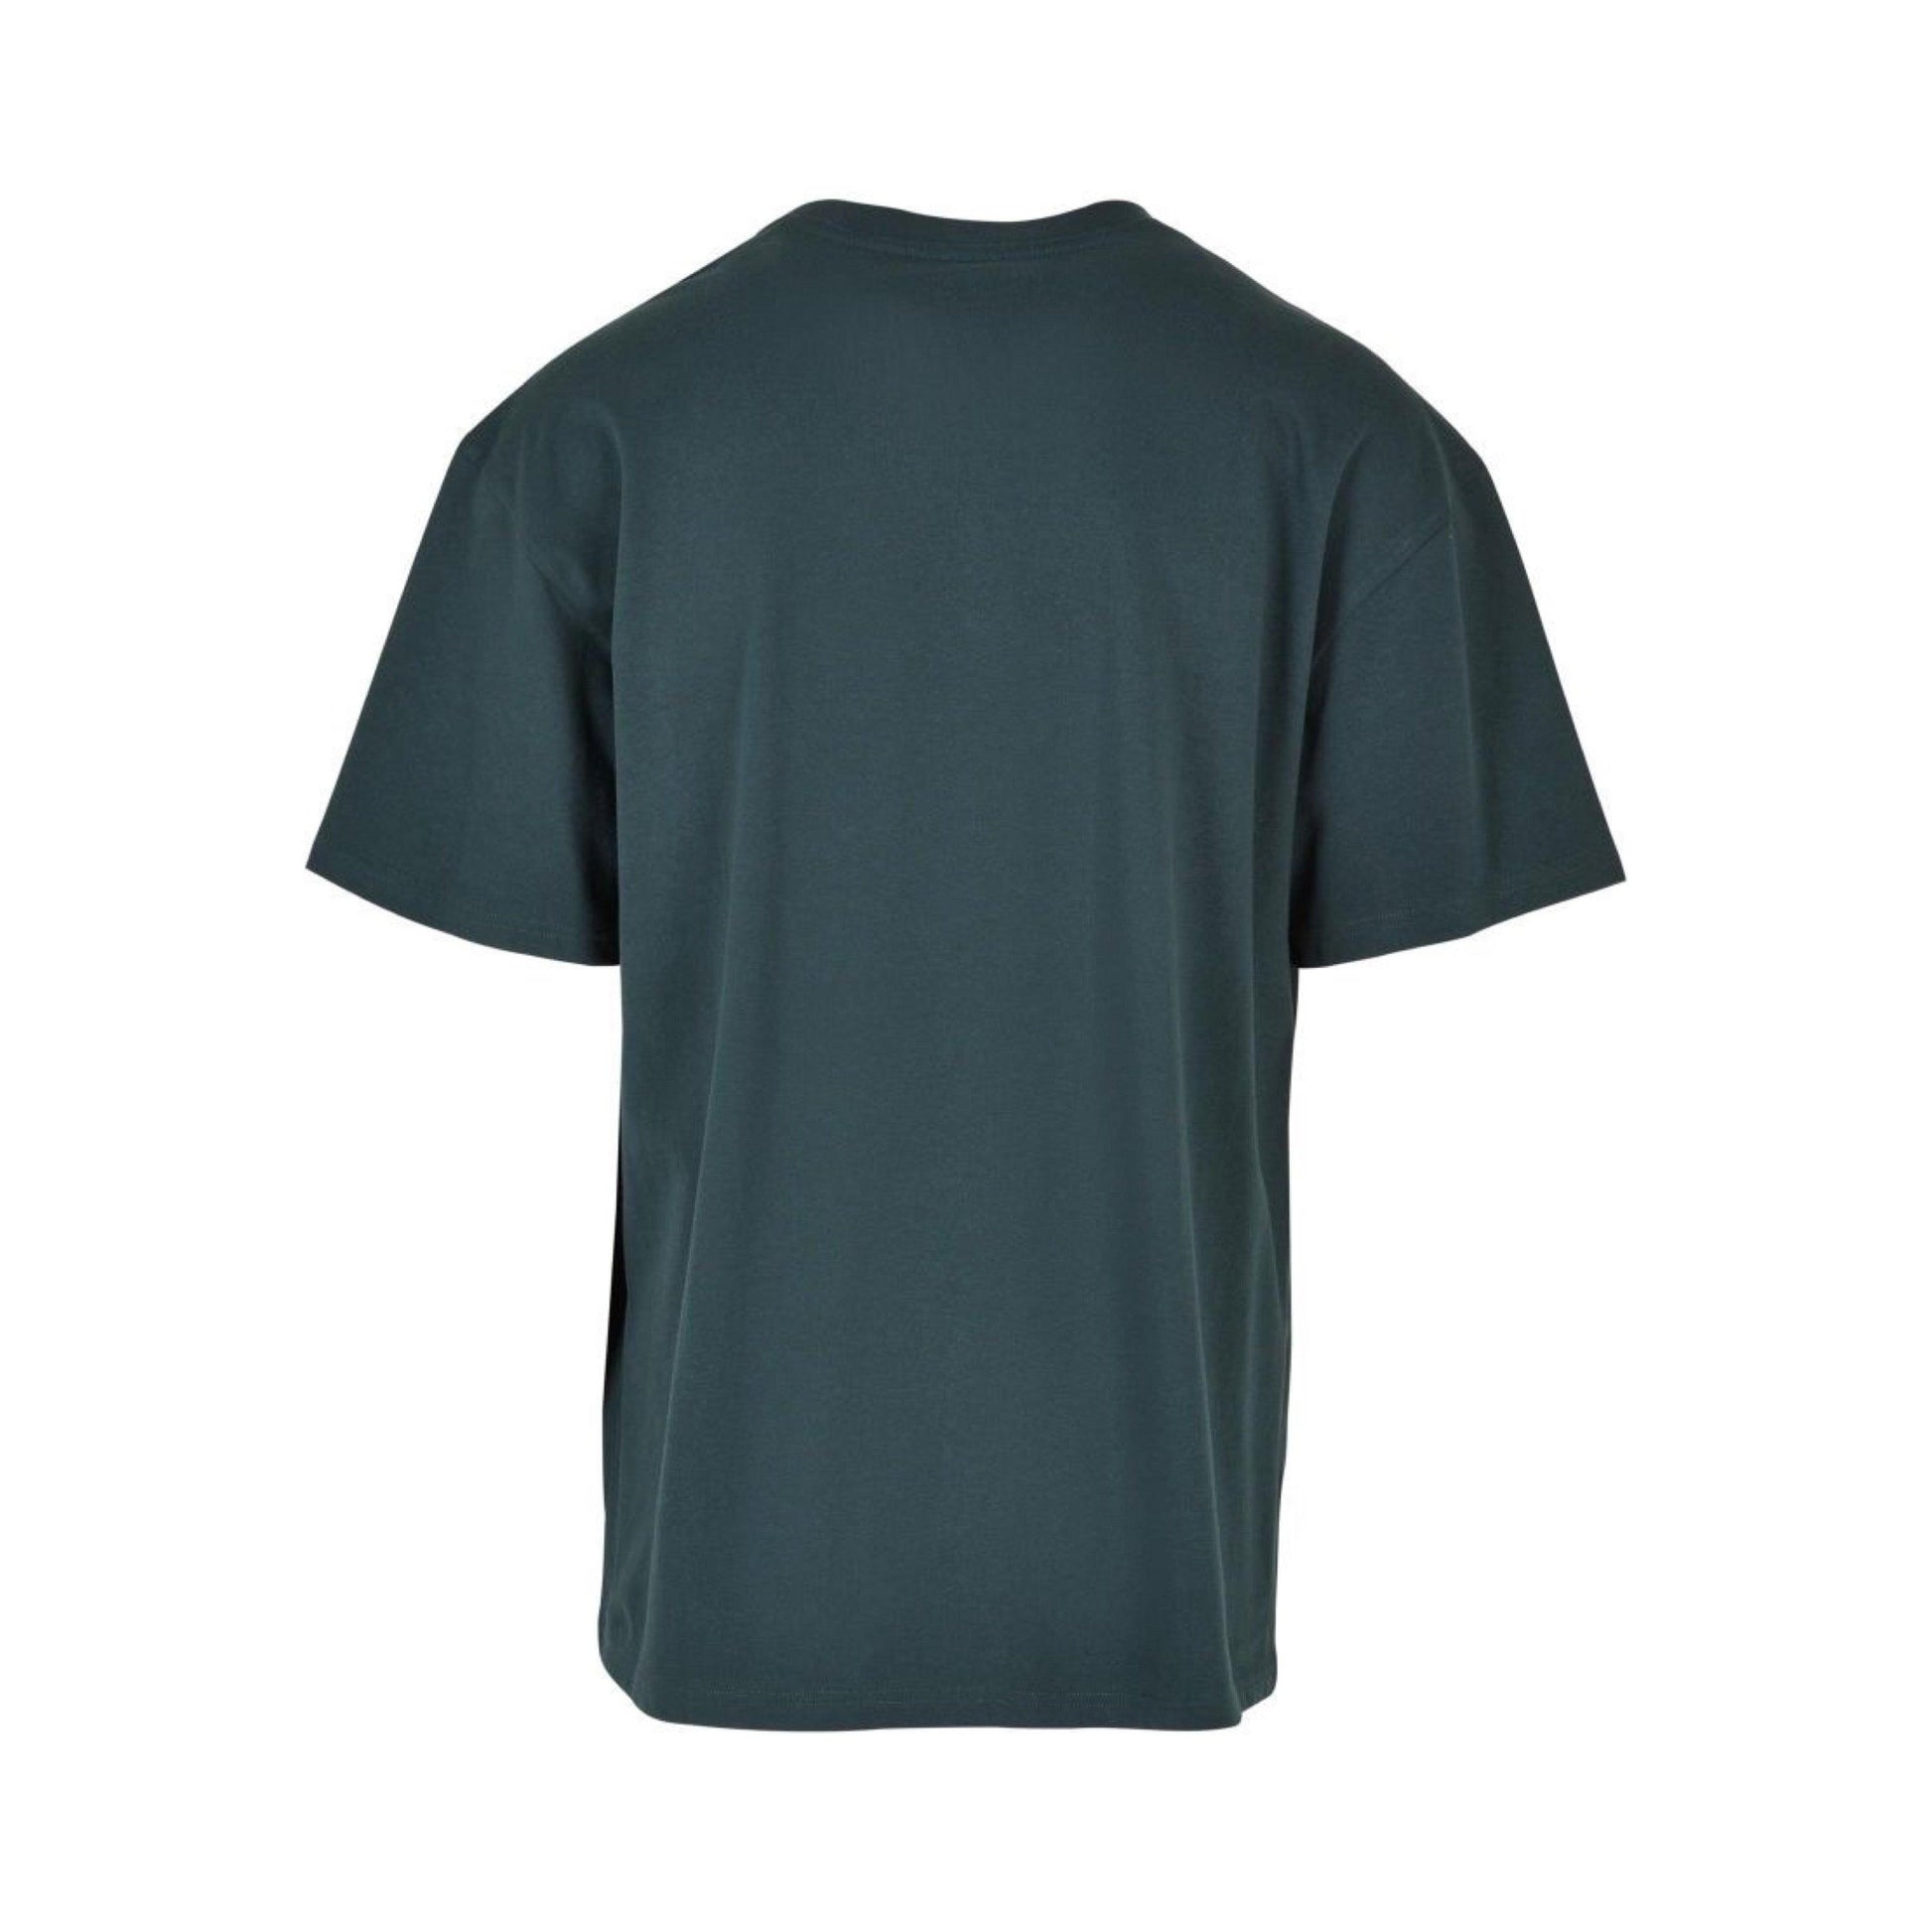 RAW Oversize Shirt Deep Green 240 g/m² - DMANERA Atelier